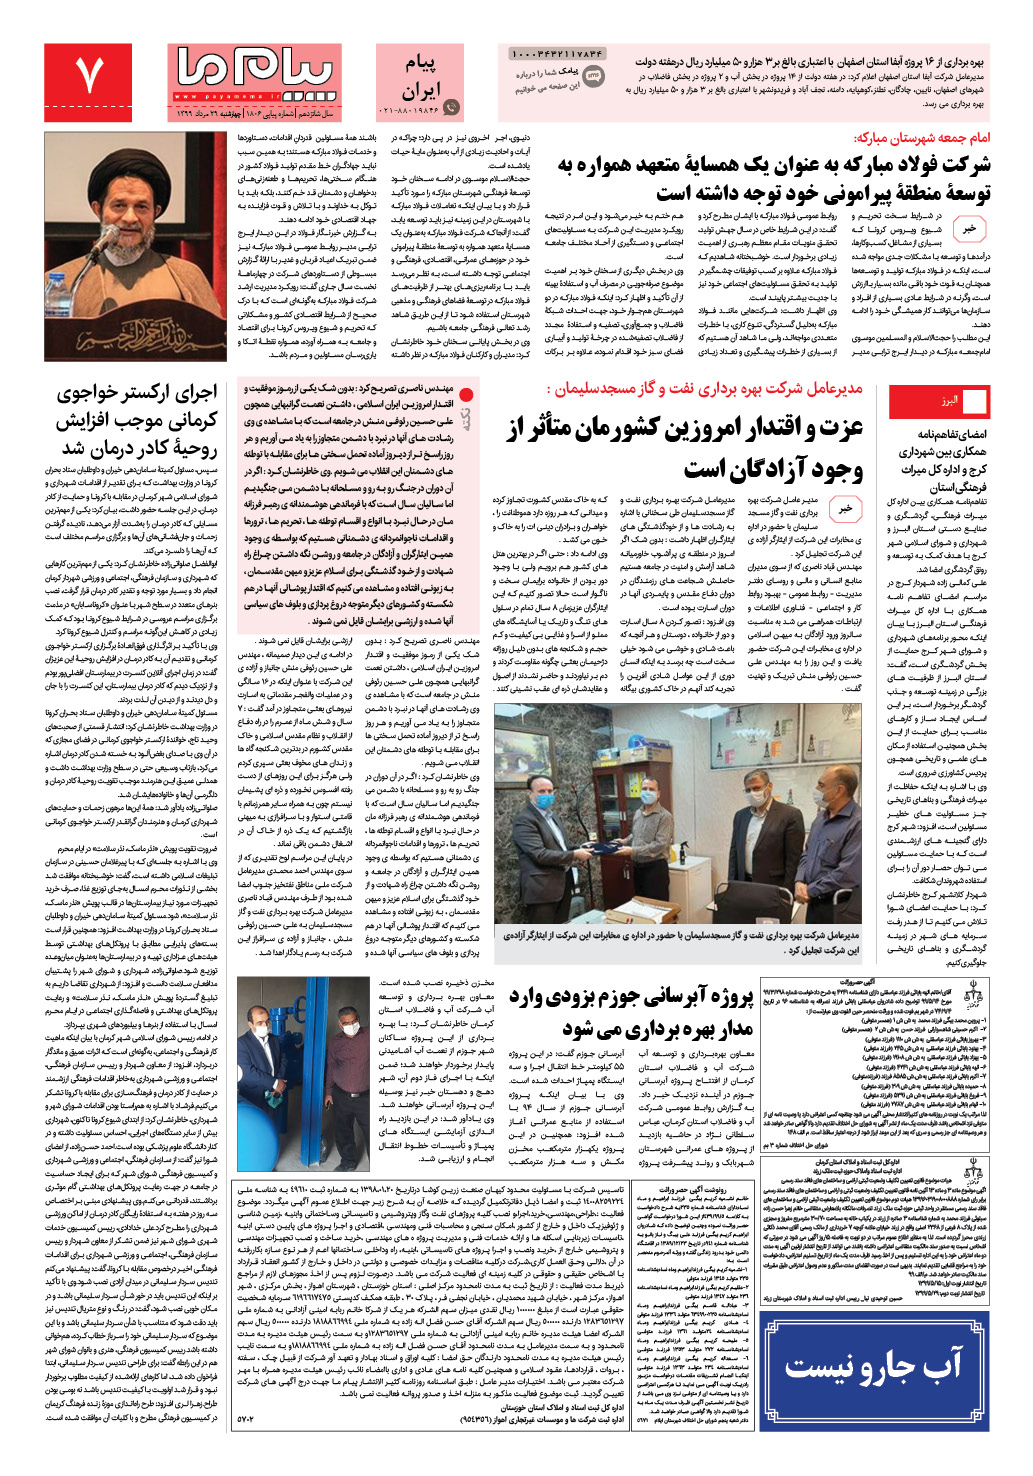 صفحه پیام ایران شماره 1806 روزنامه پیام ما